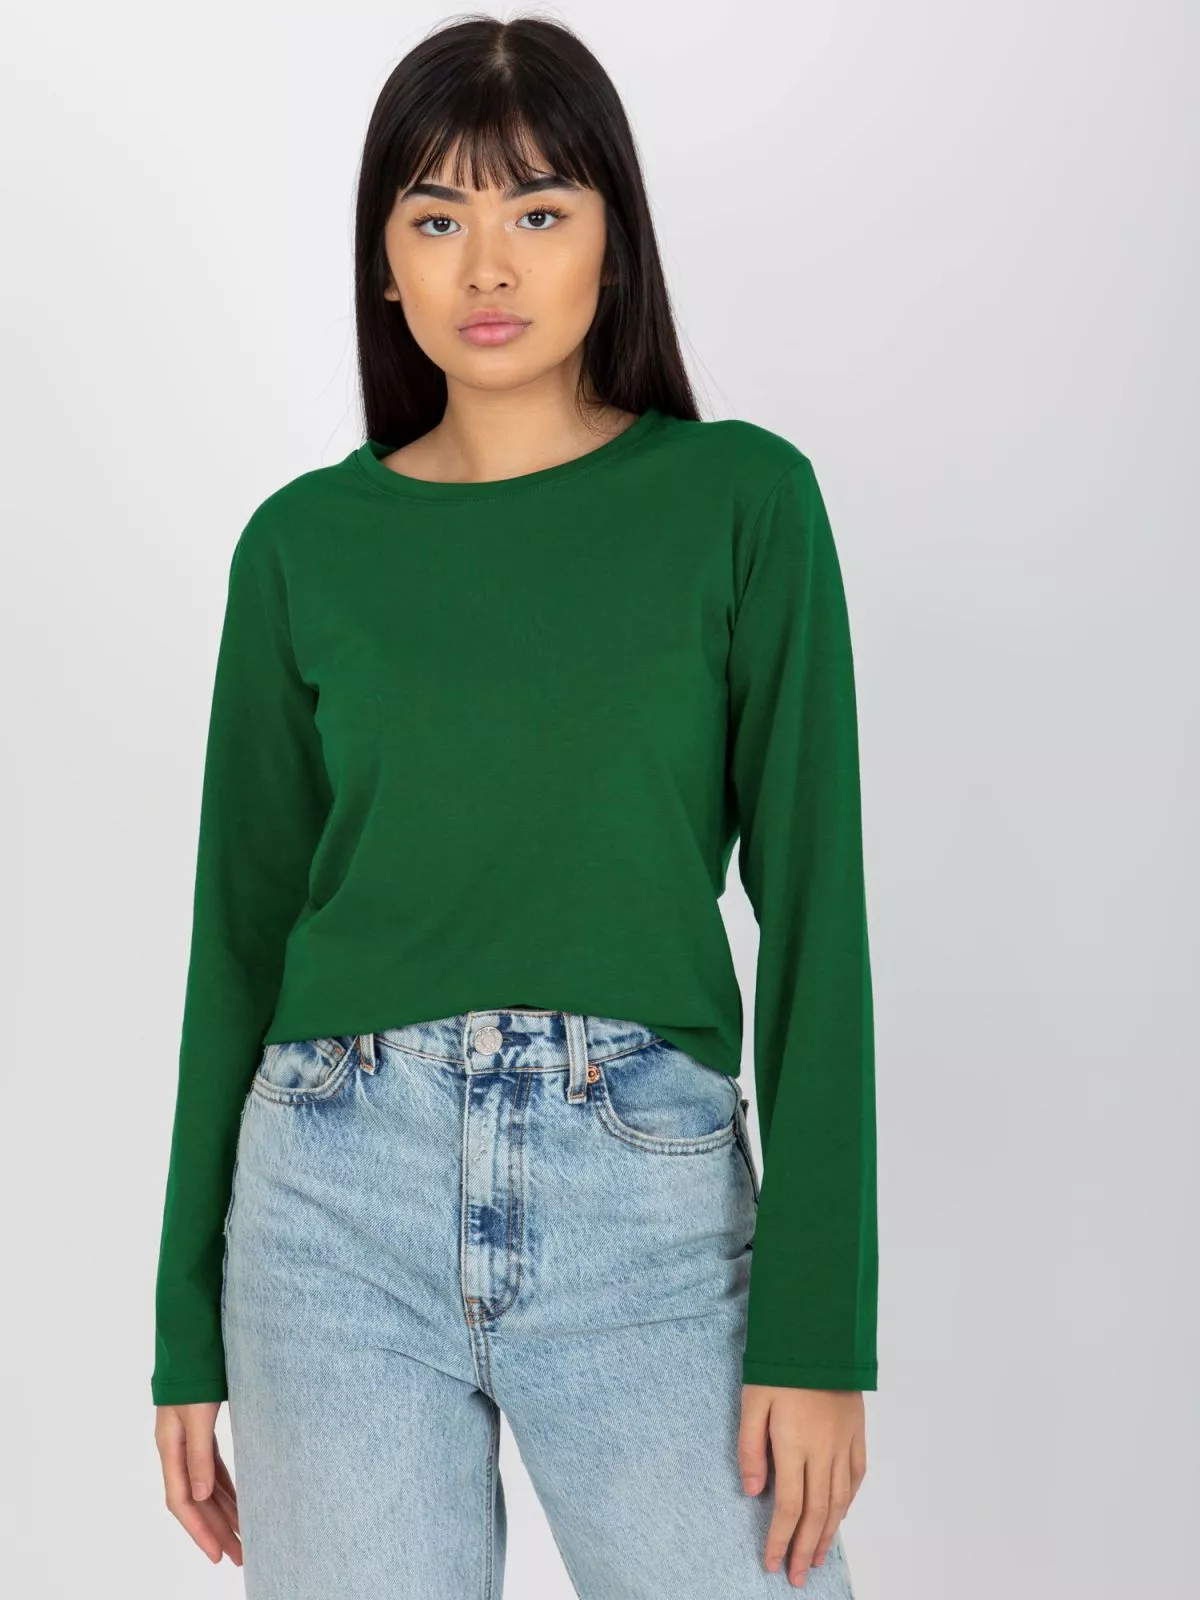 Bluza dama basic verde - bluze